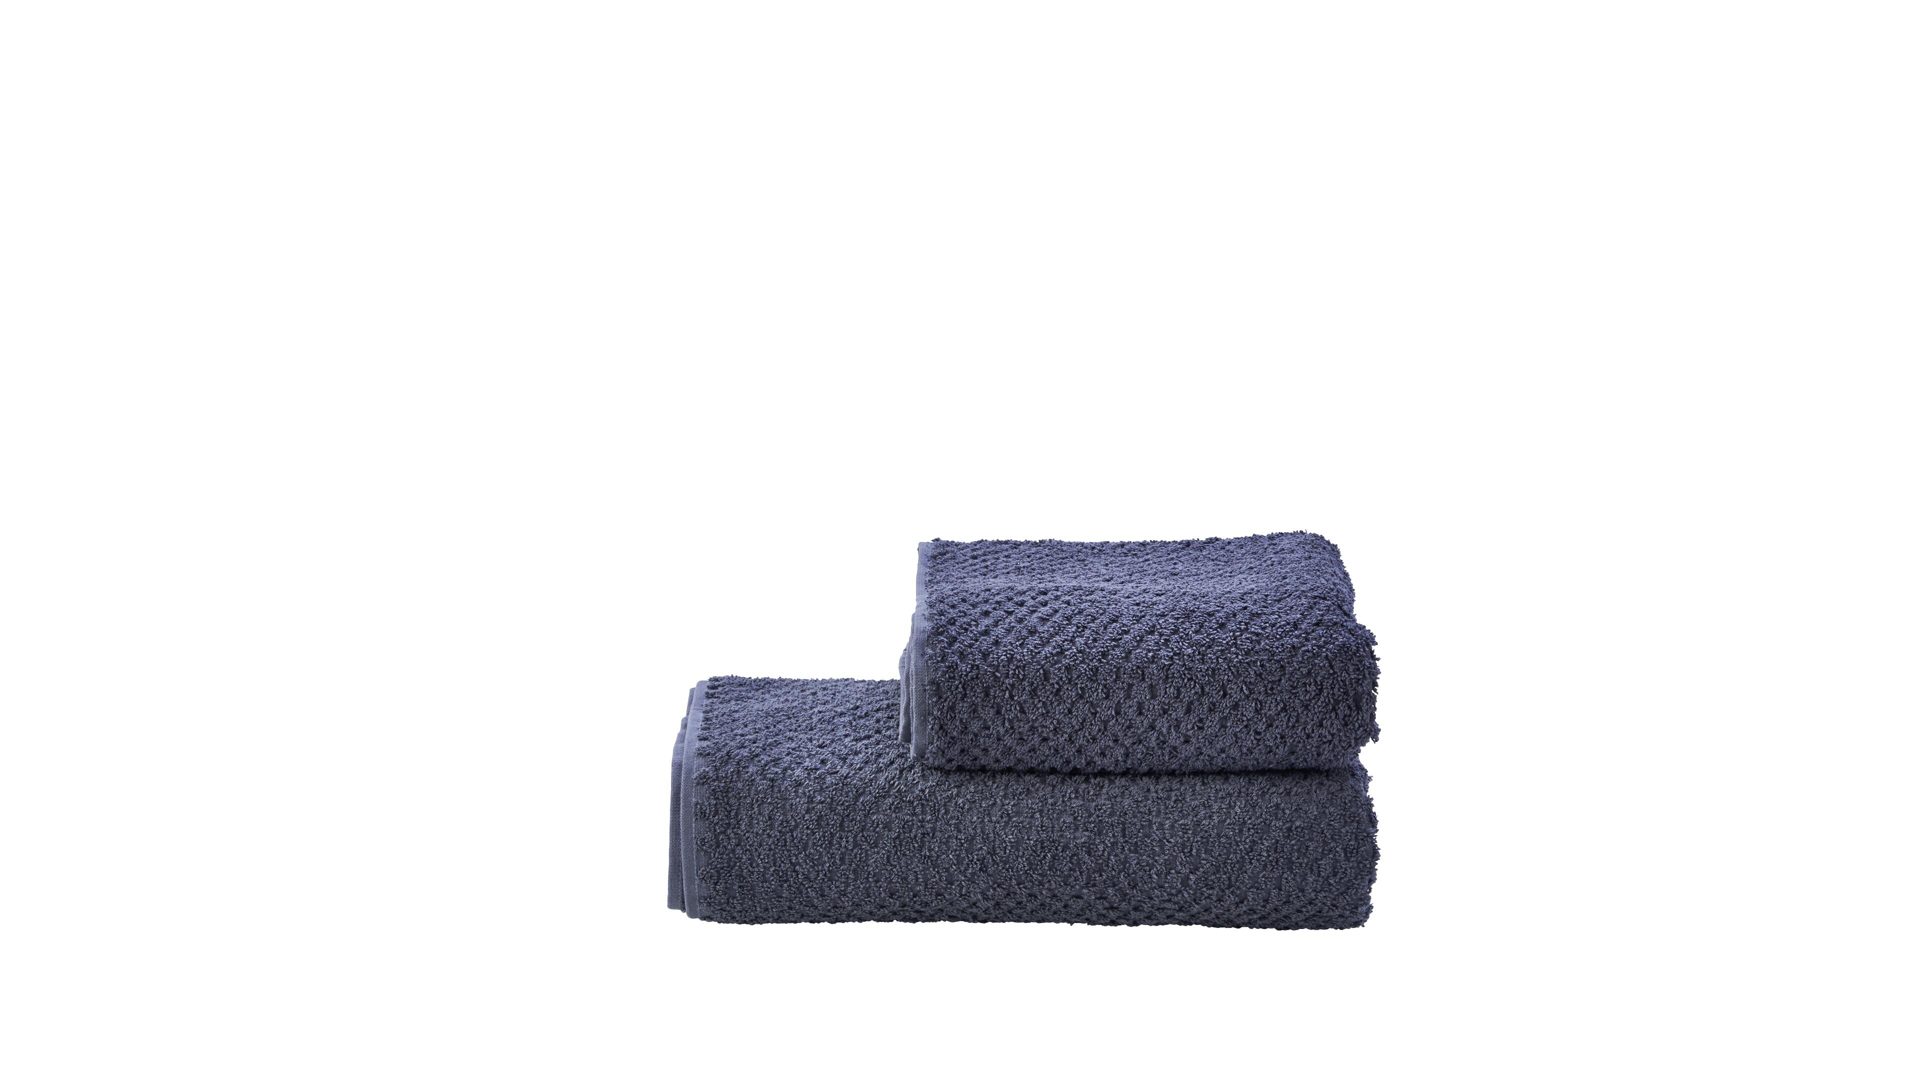 Handtuch-Set Done.® aus Stoff in Anthrazit done.® Handtuch-Set Provence Honeycomb - Heimtextilien anthrazitfarbene Baumwolle – zweiteilig